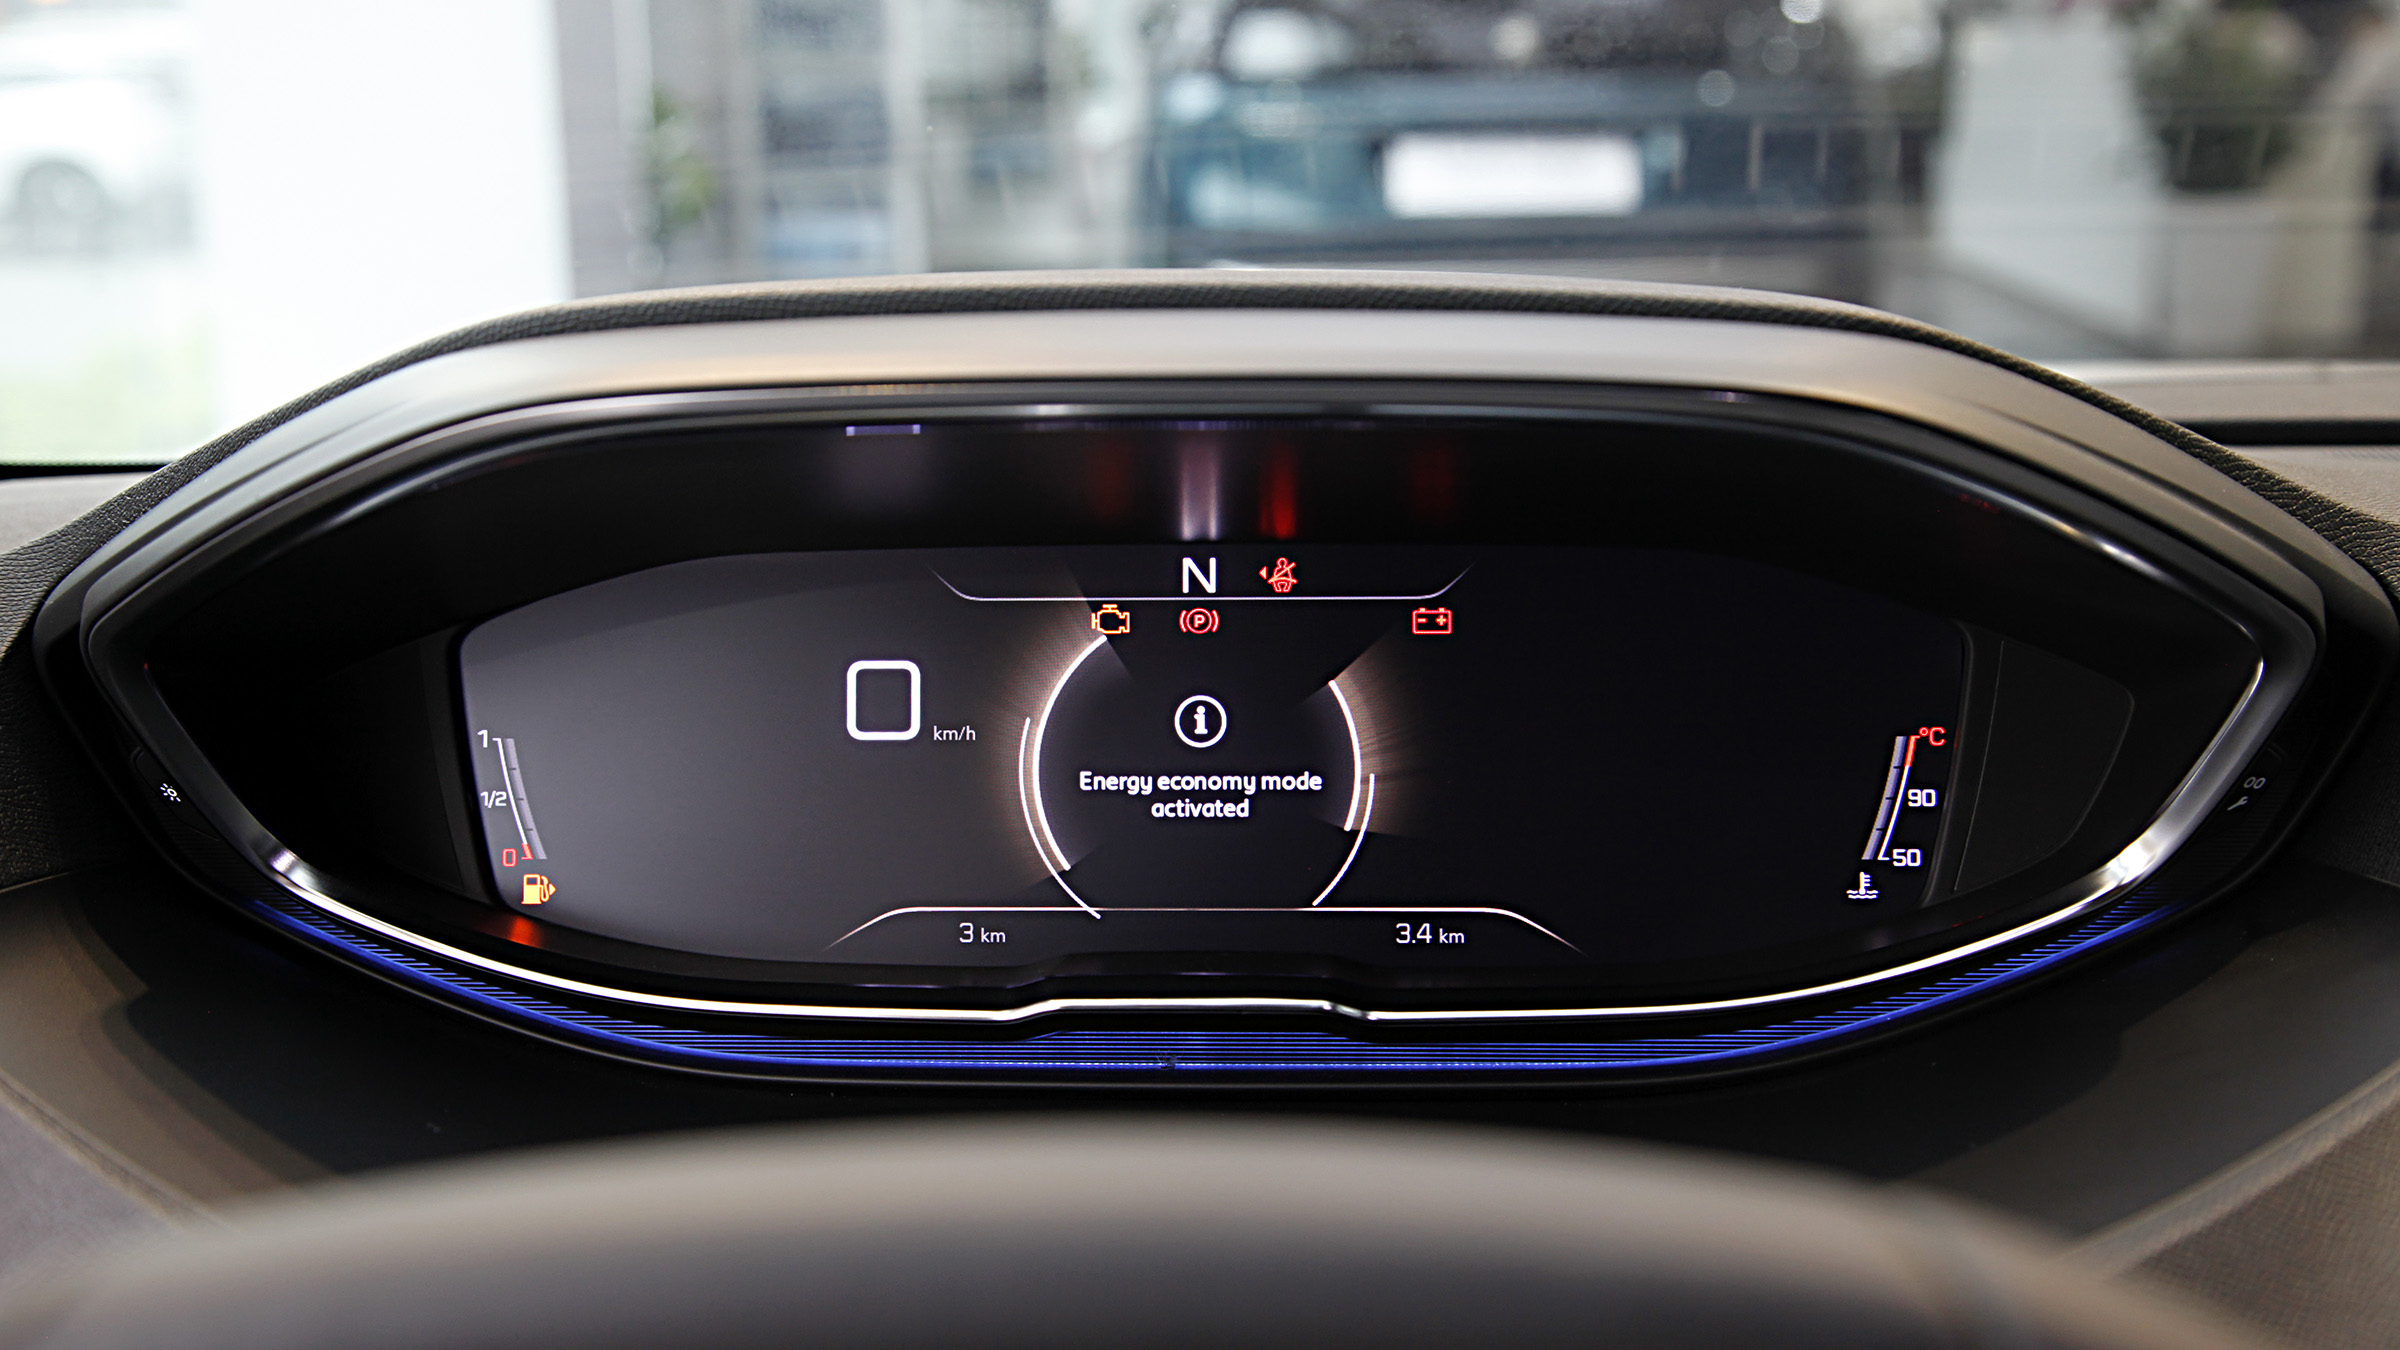 Phía sau vô-lăng là cụm đồng hồ kỹ thuật số hoàn toàn, màn hình 12,3 inch này giúp hiển thị toàn bộ thông tin vận hành của xe, đồng thời được đặt cao gần với mắt nhìn để tiện quan sát.